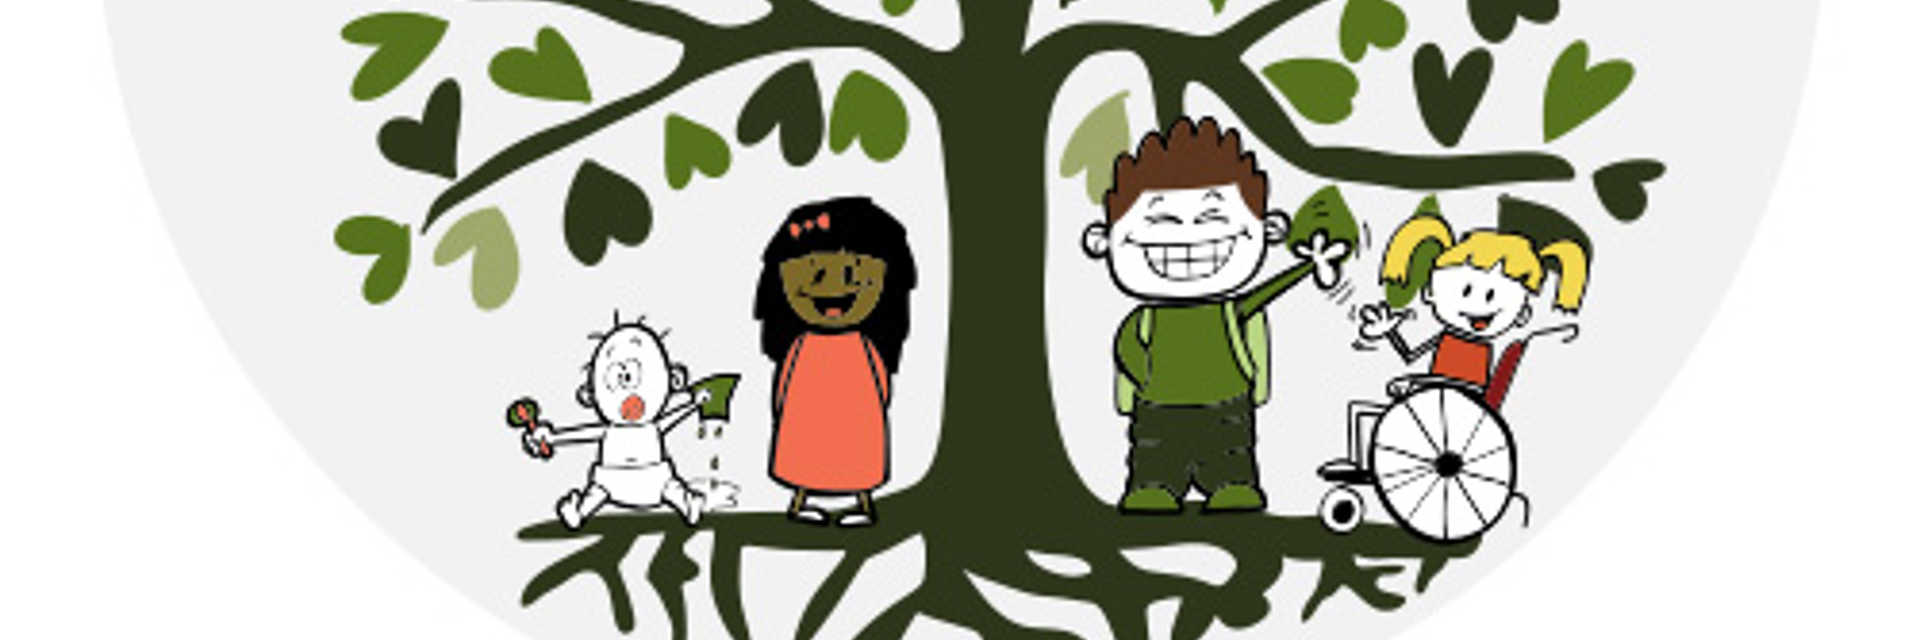 Lysholt - rundt logo, som viser rids af børn under et træ, ovenover er der tegning af en fugl.